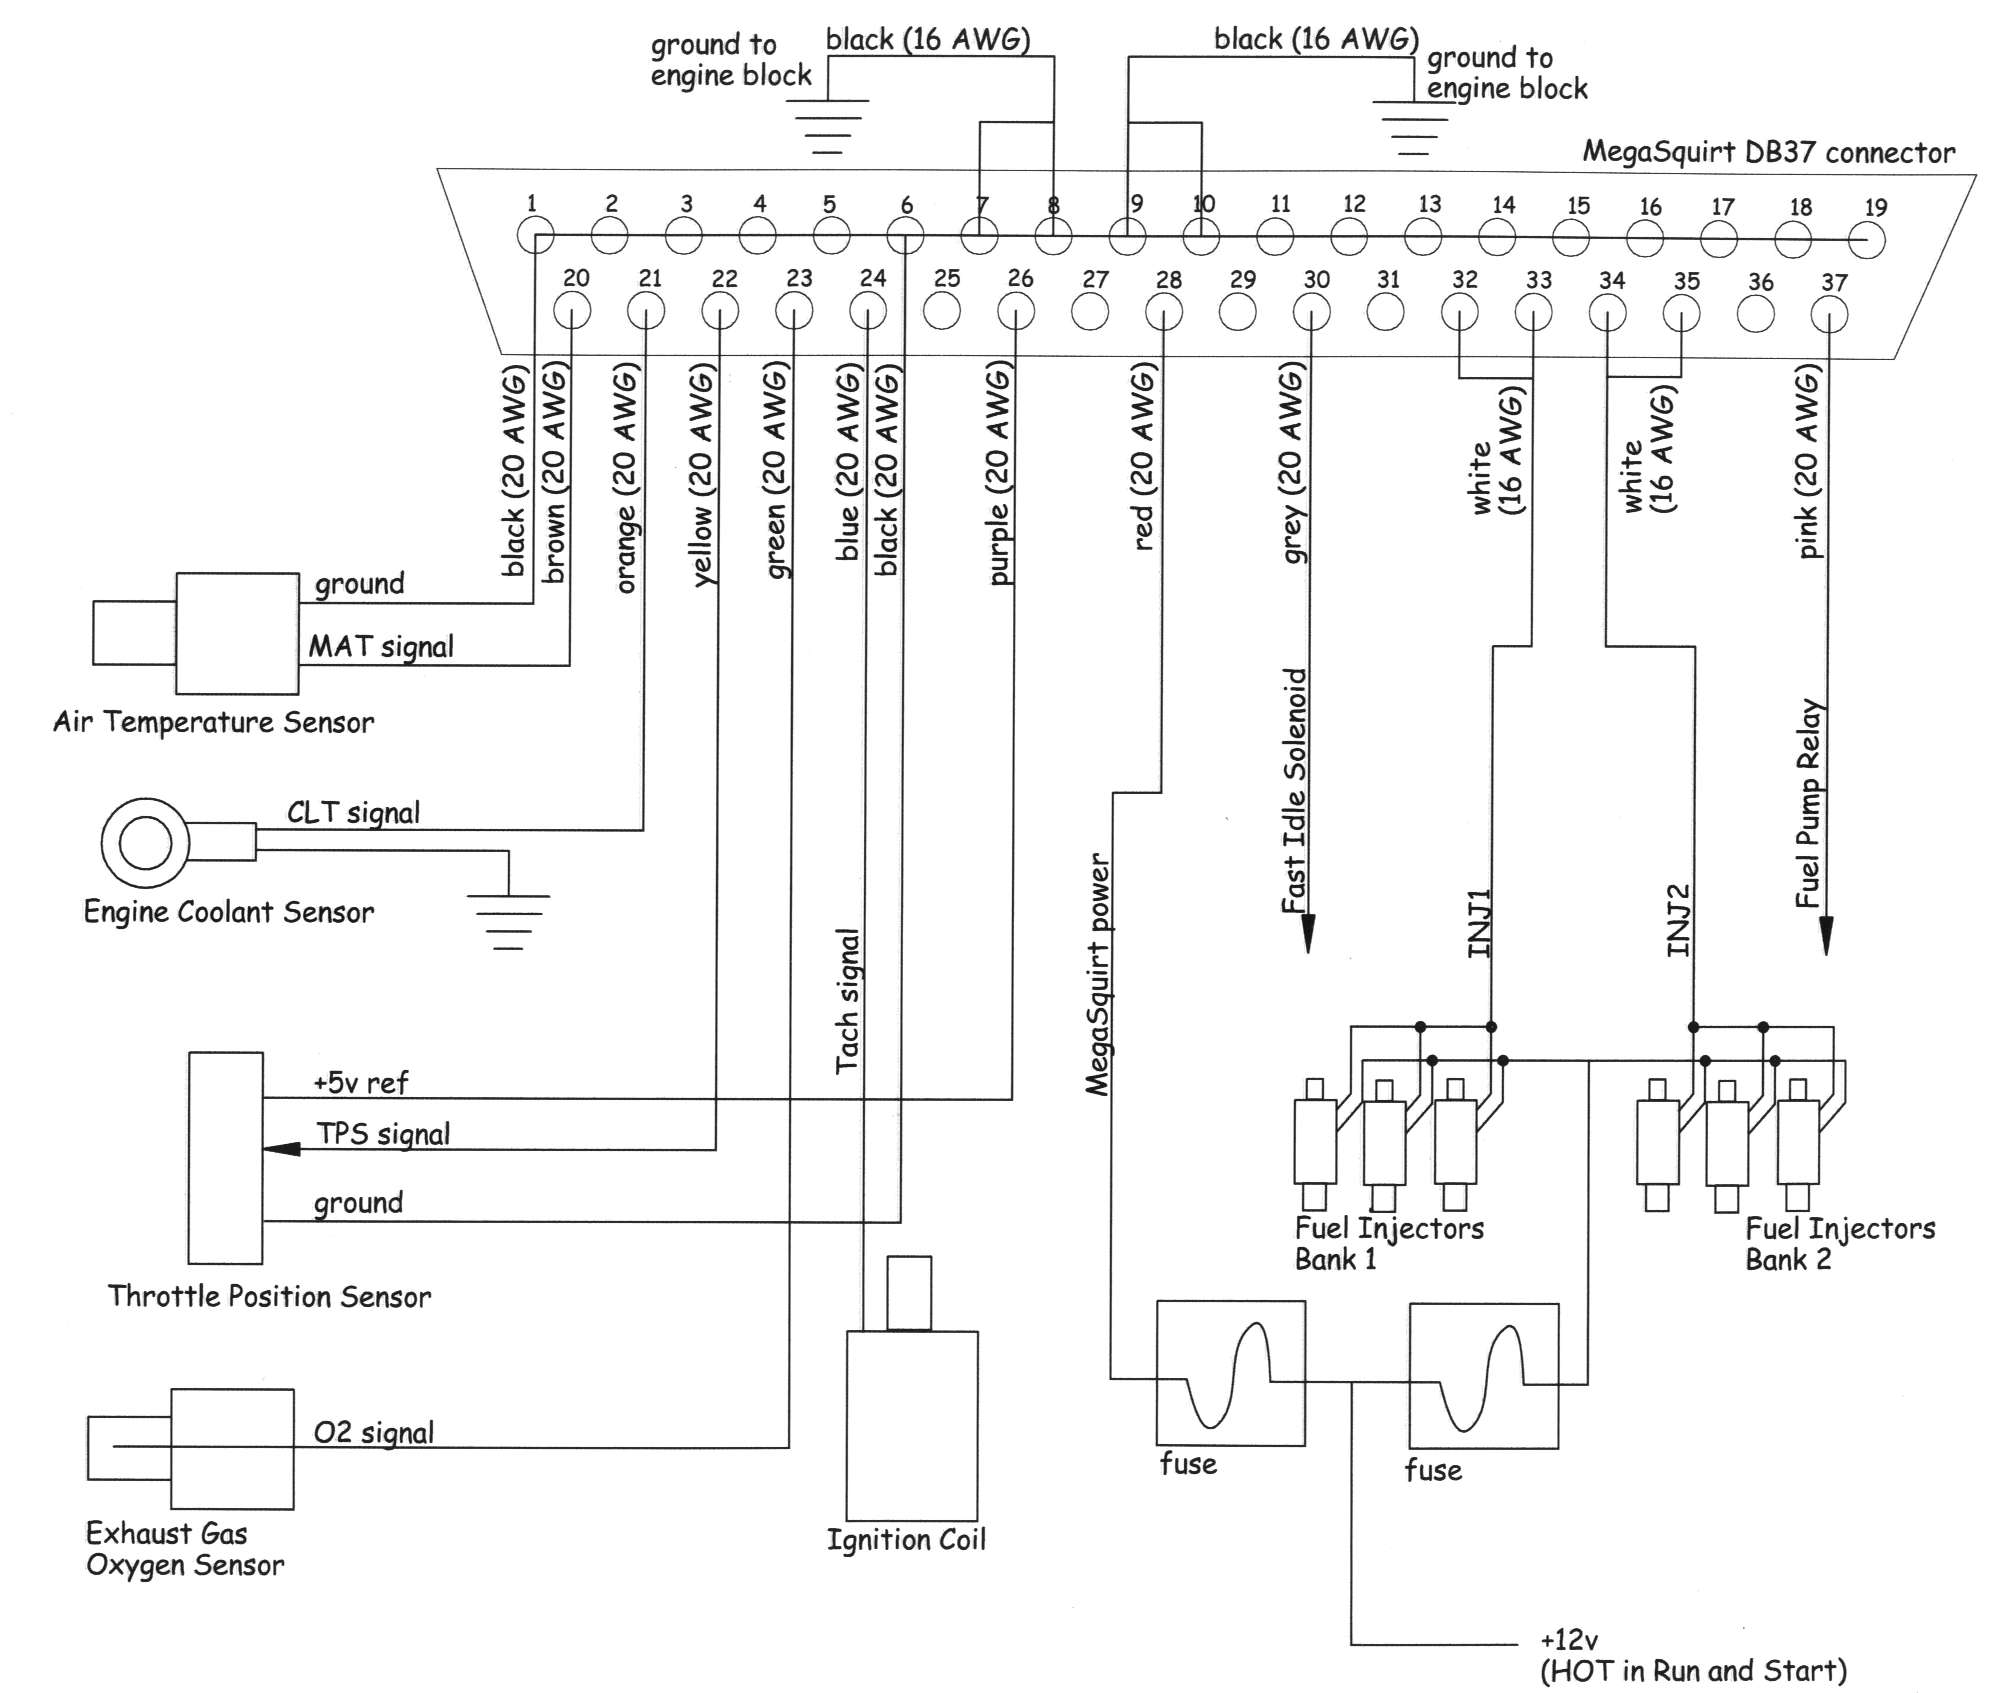 megasquirt wiring diagram.jpg